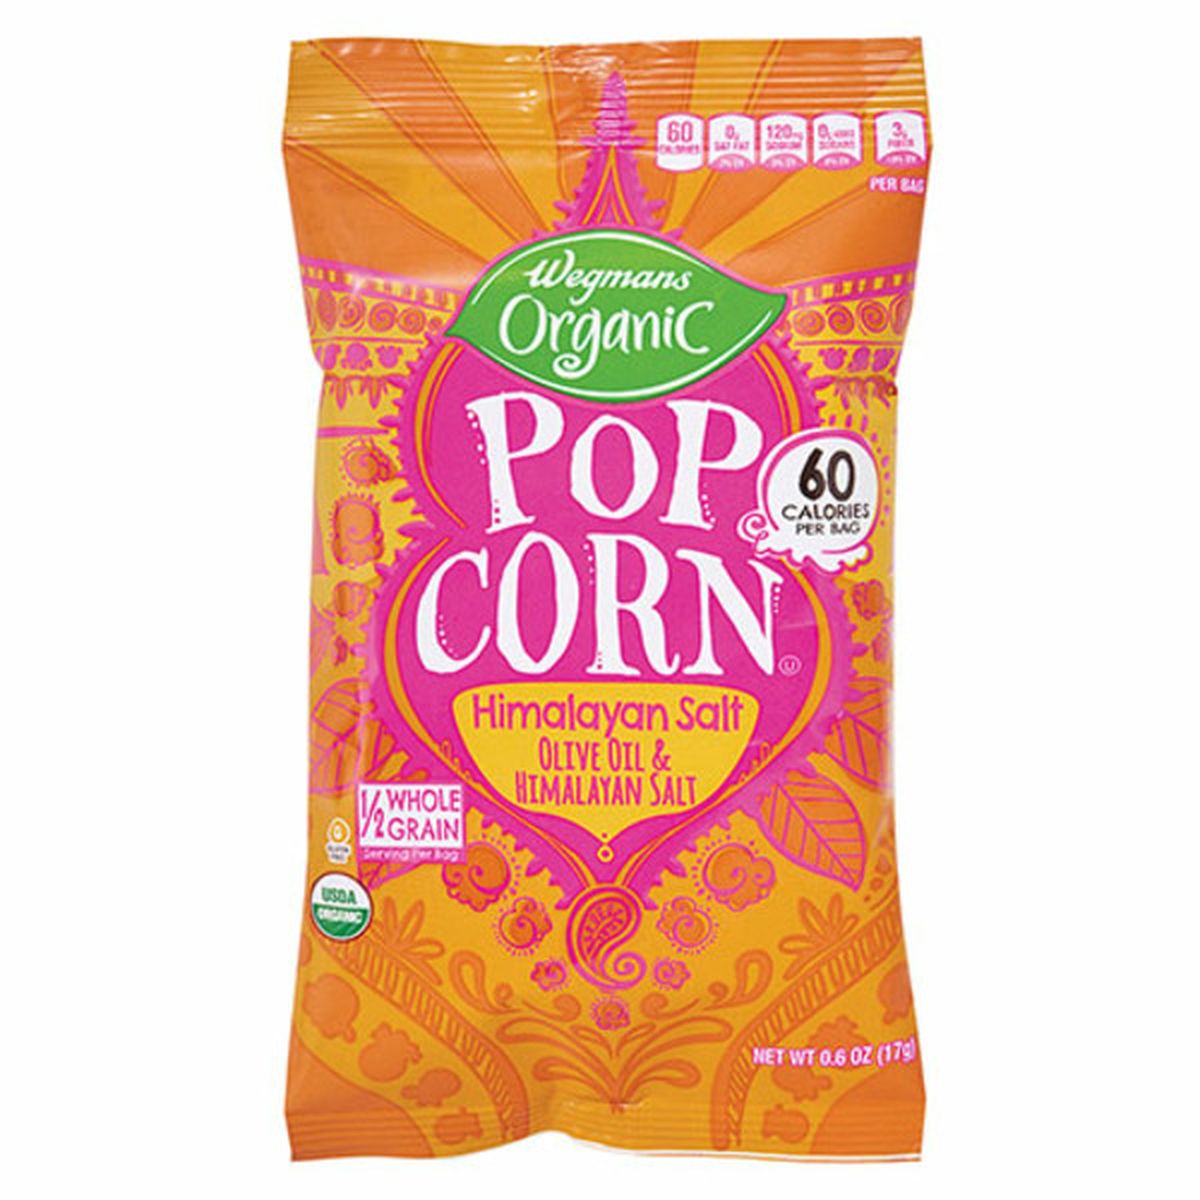 Calories in Wegmans Organic Popcorn, Himalayan Salt